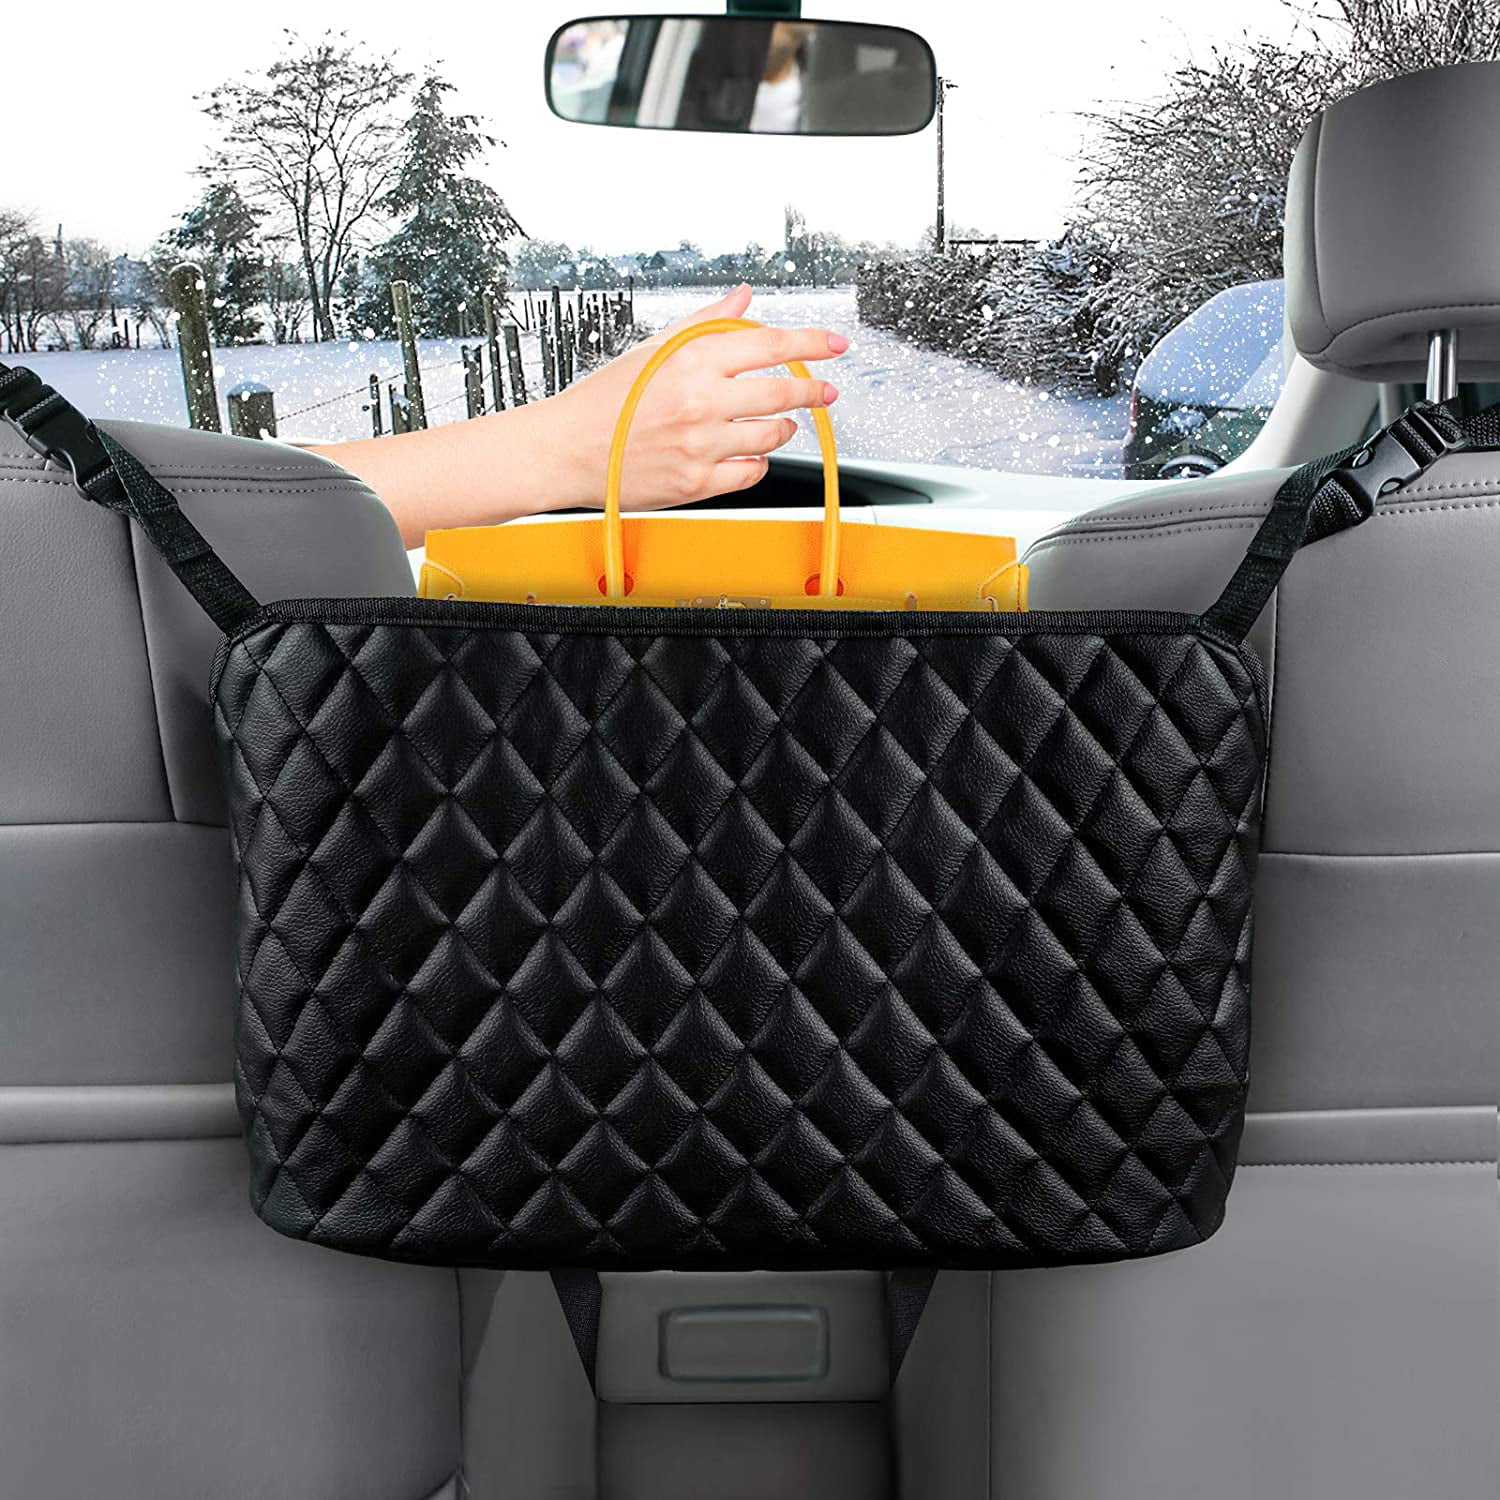 Barrier of Backseat Pet Kids Black Leather Seat Back Organizer Front Seat Storage Car Handbag Holder Car Purse Storage & Pocket 